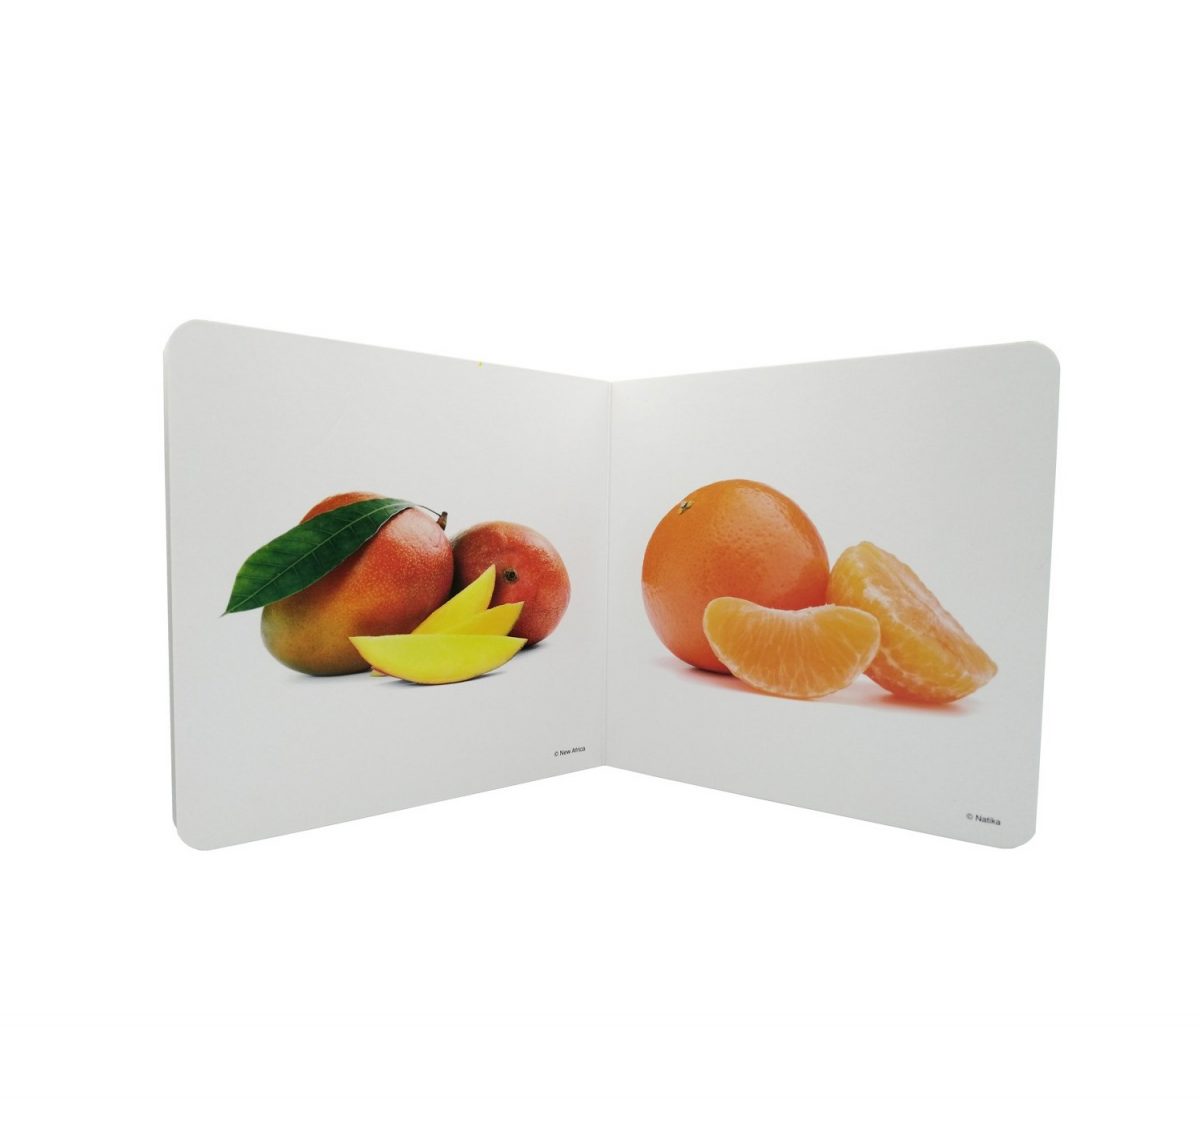 Libro de fotografías de algunas de las frutas más comunes. El libro incluye diez fotos de pomelo, coco, papaya, melocotón, mango, mandarina, higo, melón, cerezas y ciruela.